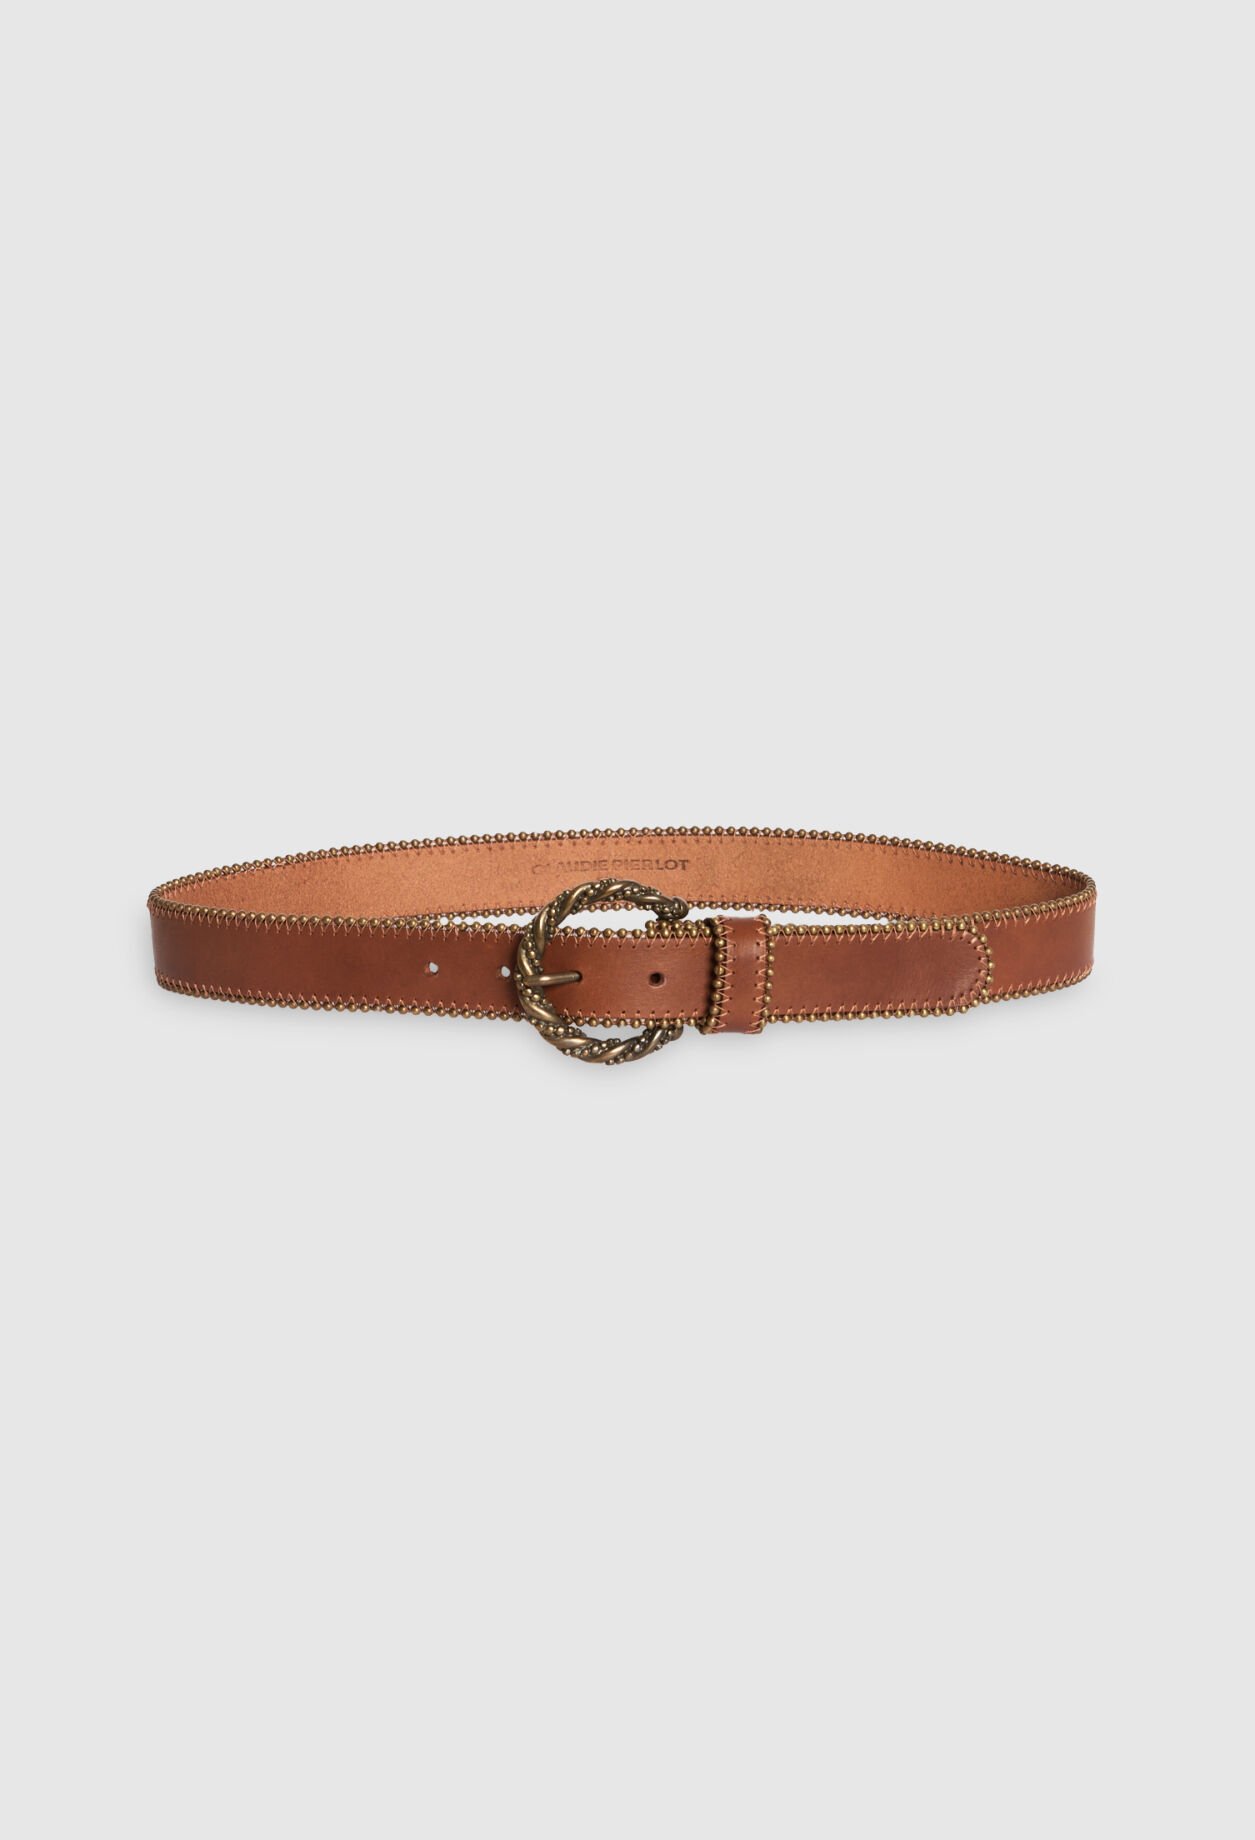 Camel leather belt